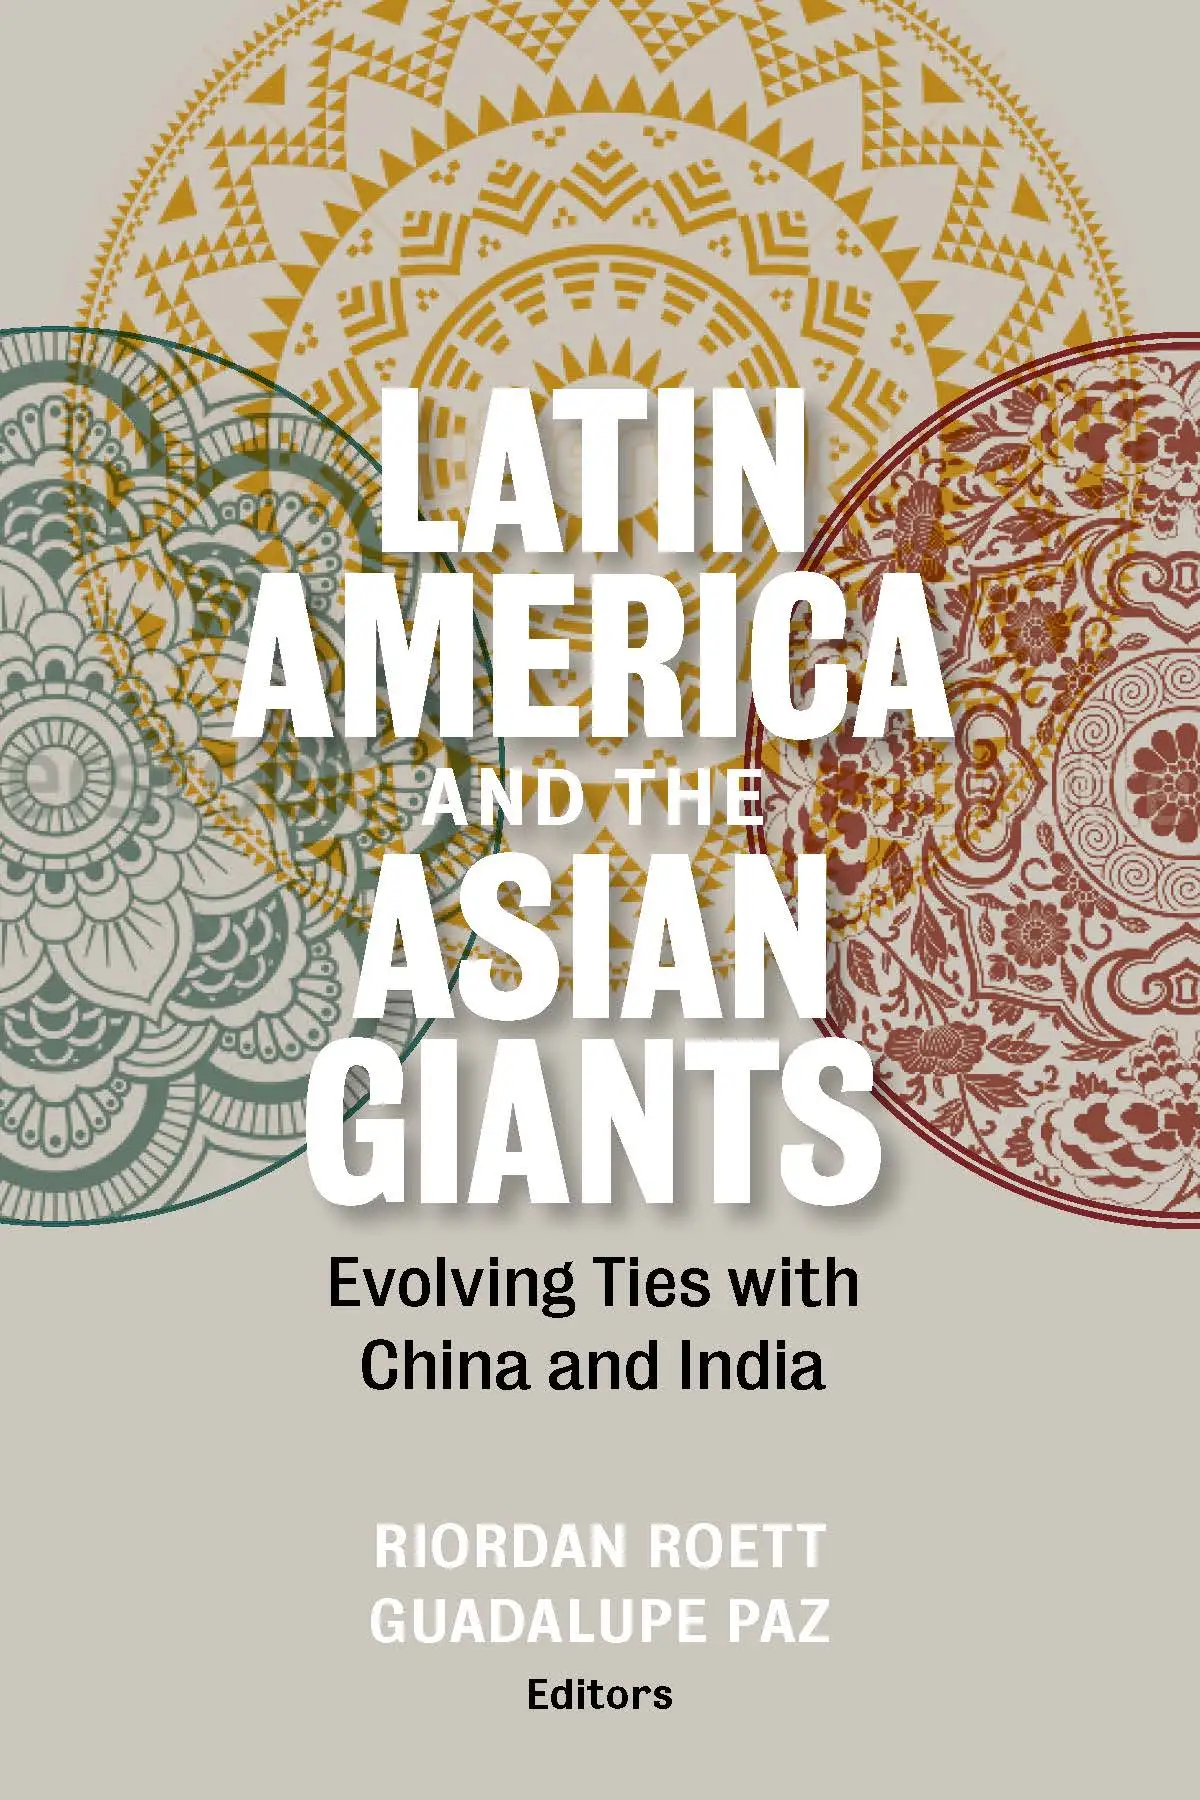 Asian Latin